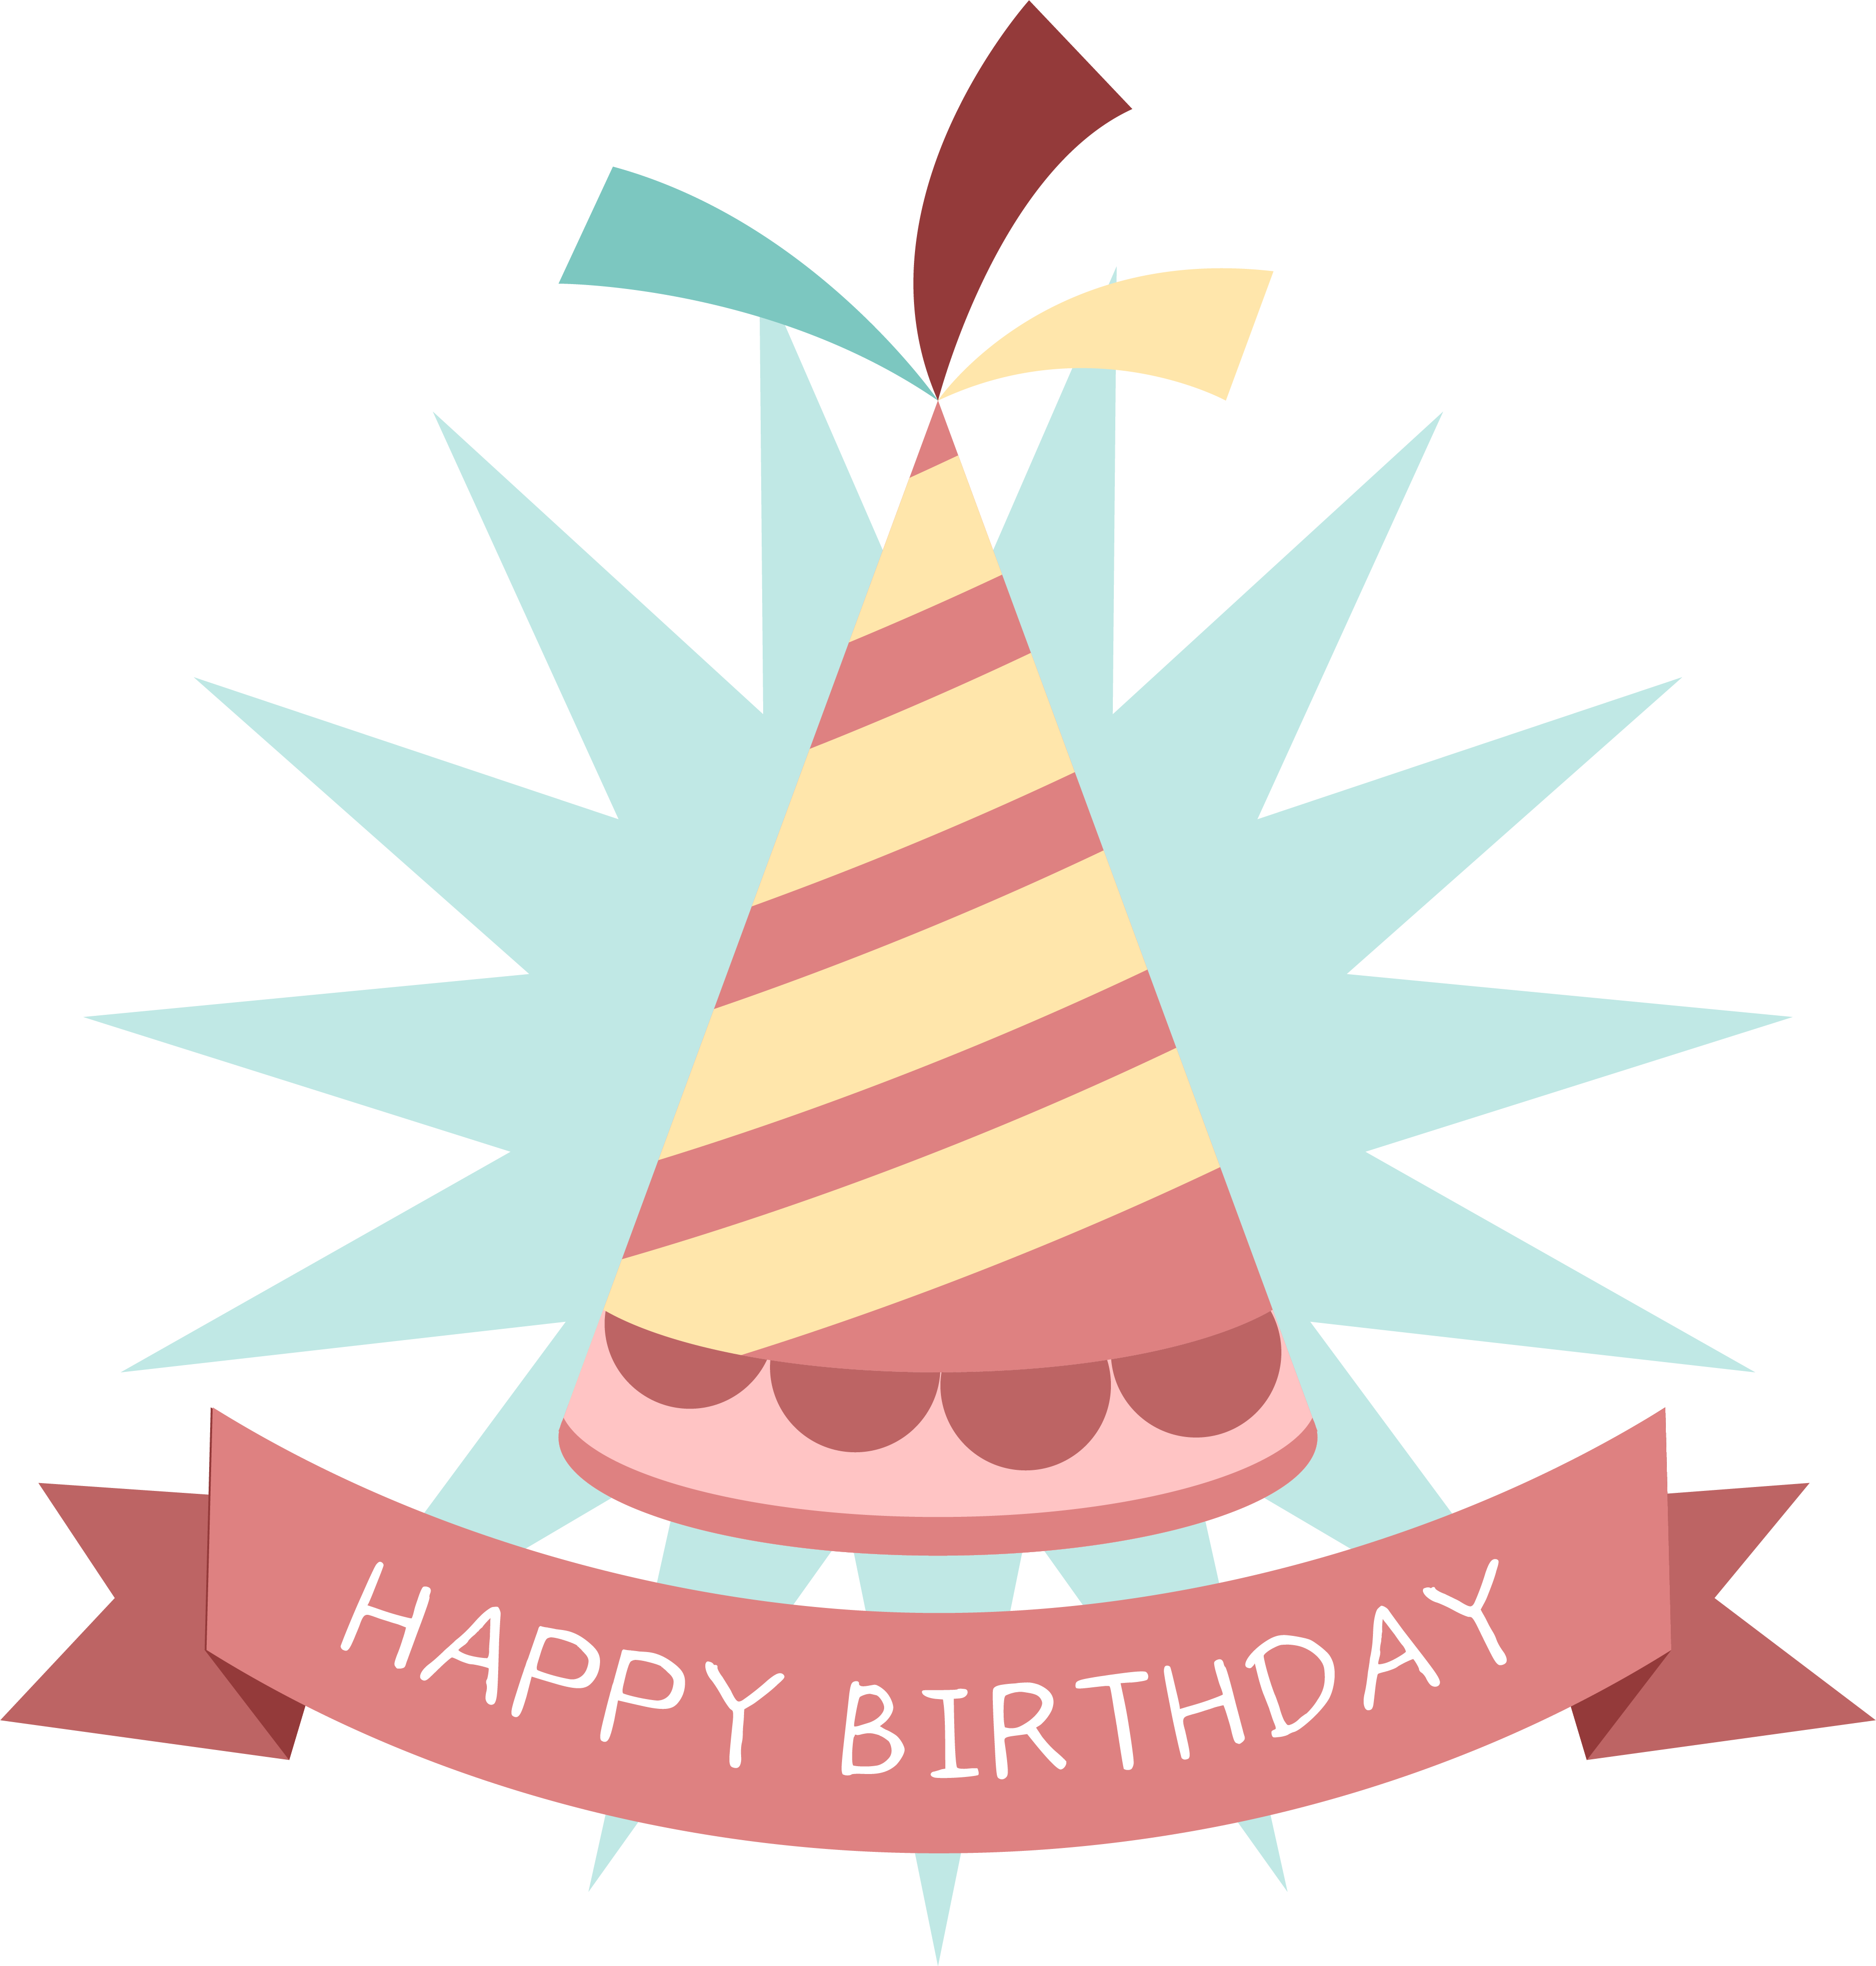 Birthday Party Hat Sticker Clip Art - Birthday Cap Sticker Free Download (3830x4014)